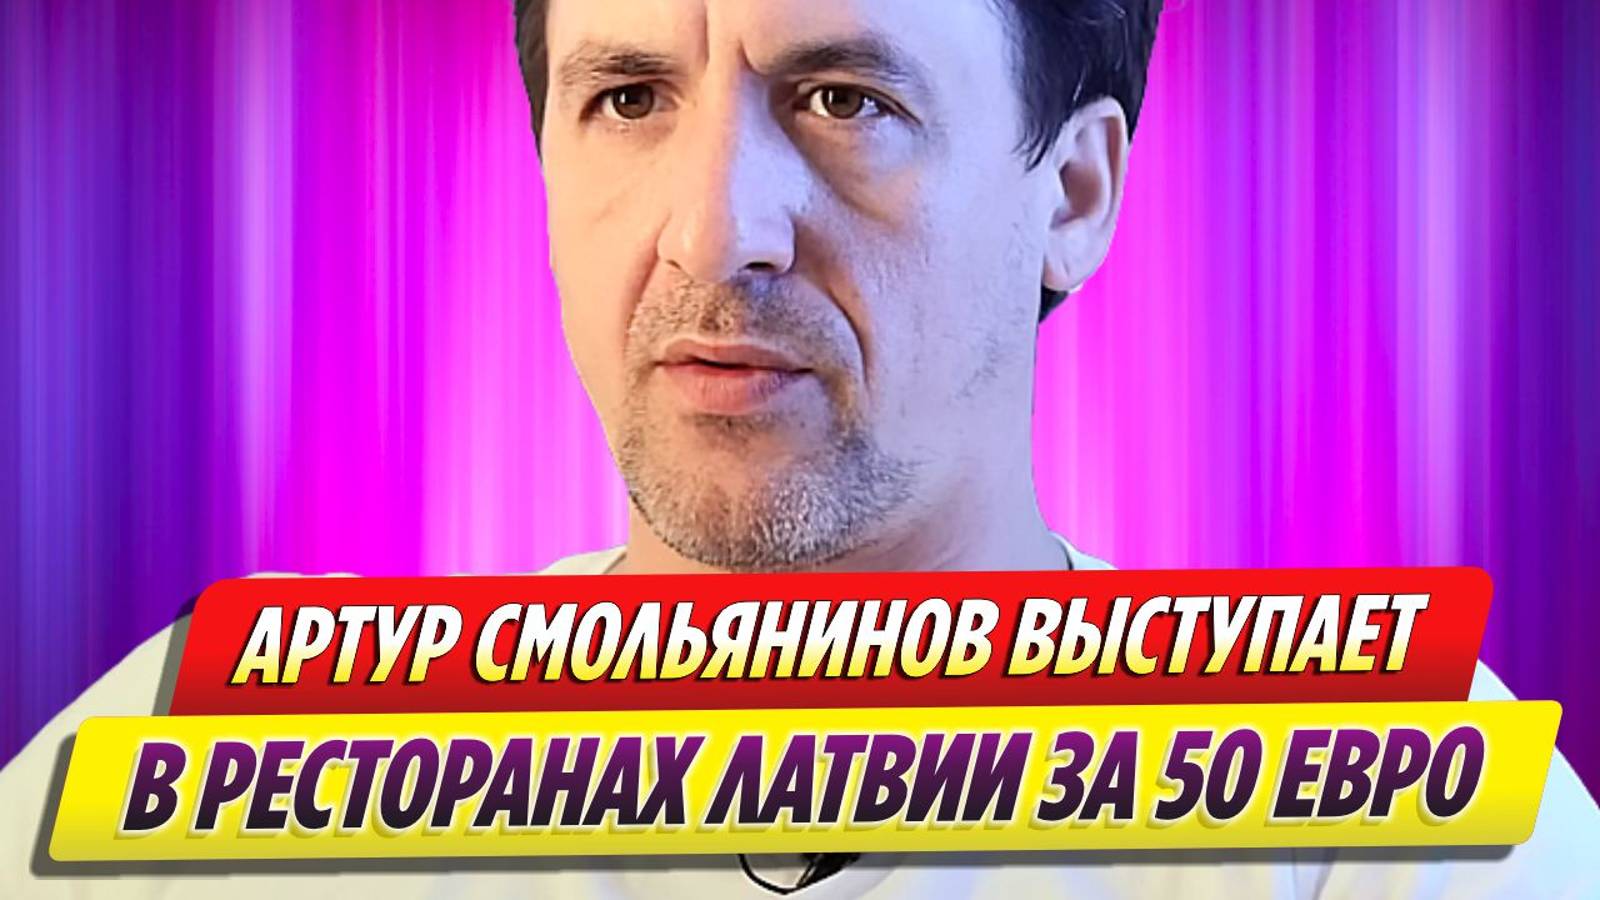 Актер Артур Смольянинов вынужден выступать в ресторанах Латвии за 50 евро